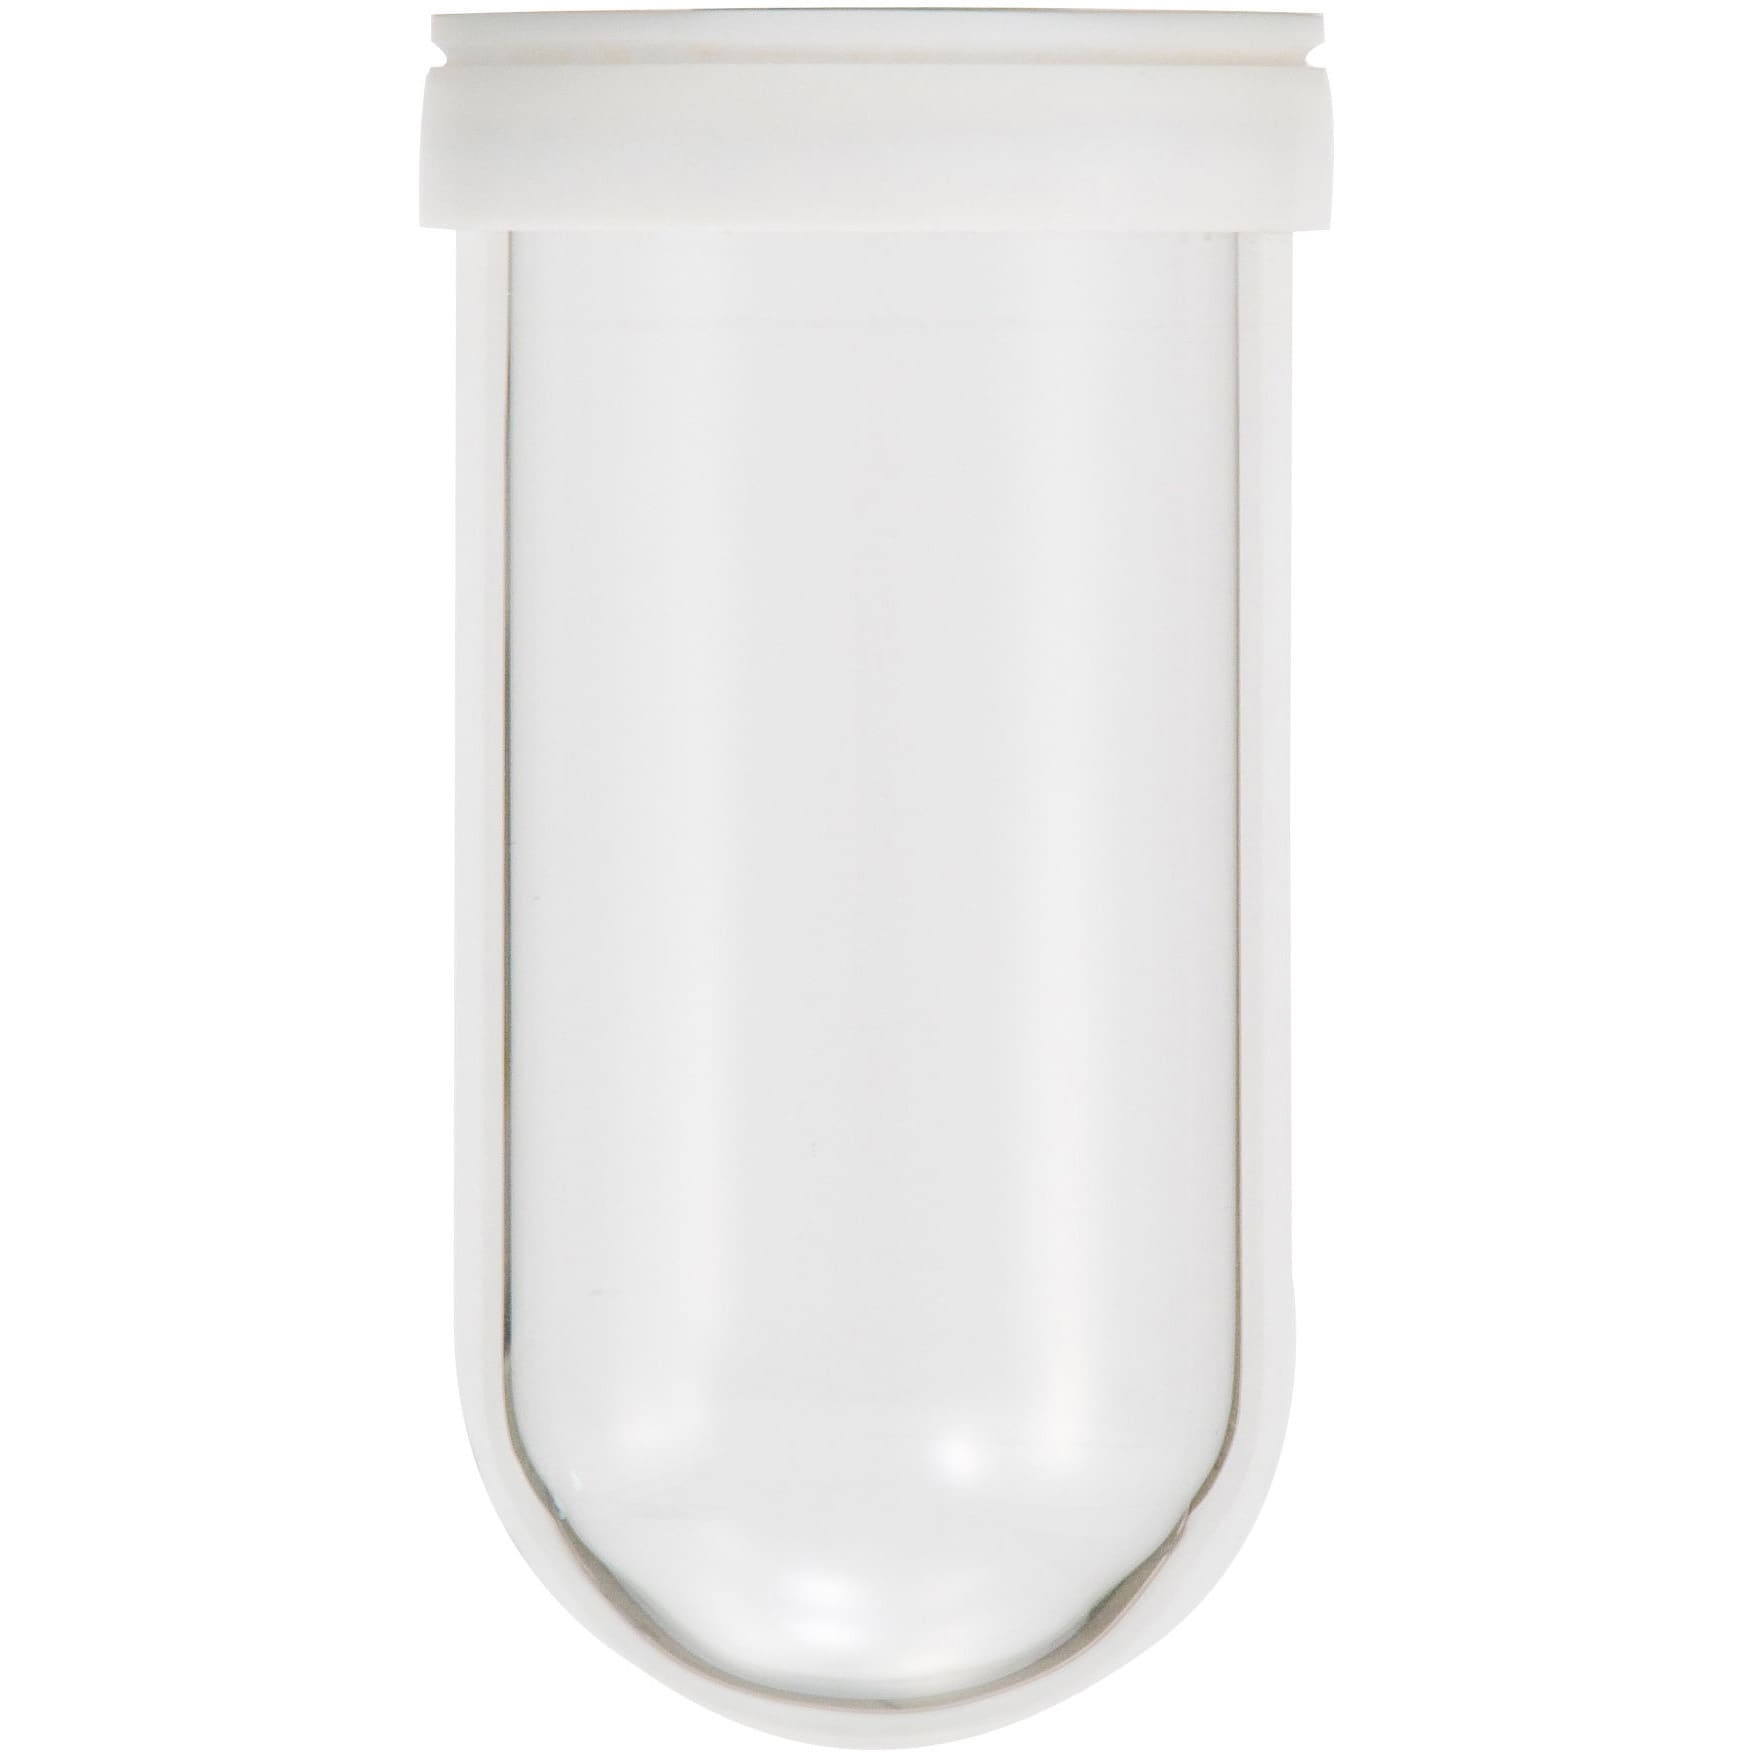 柴田科学 ガラス内筒容器 CPP型用 120mL 054310-2332